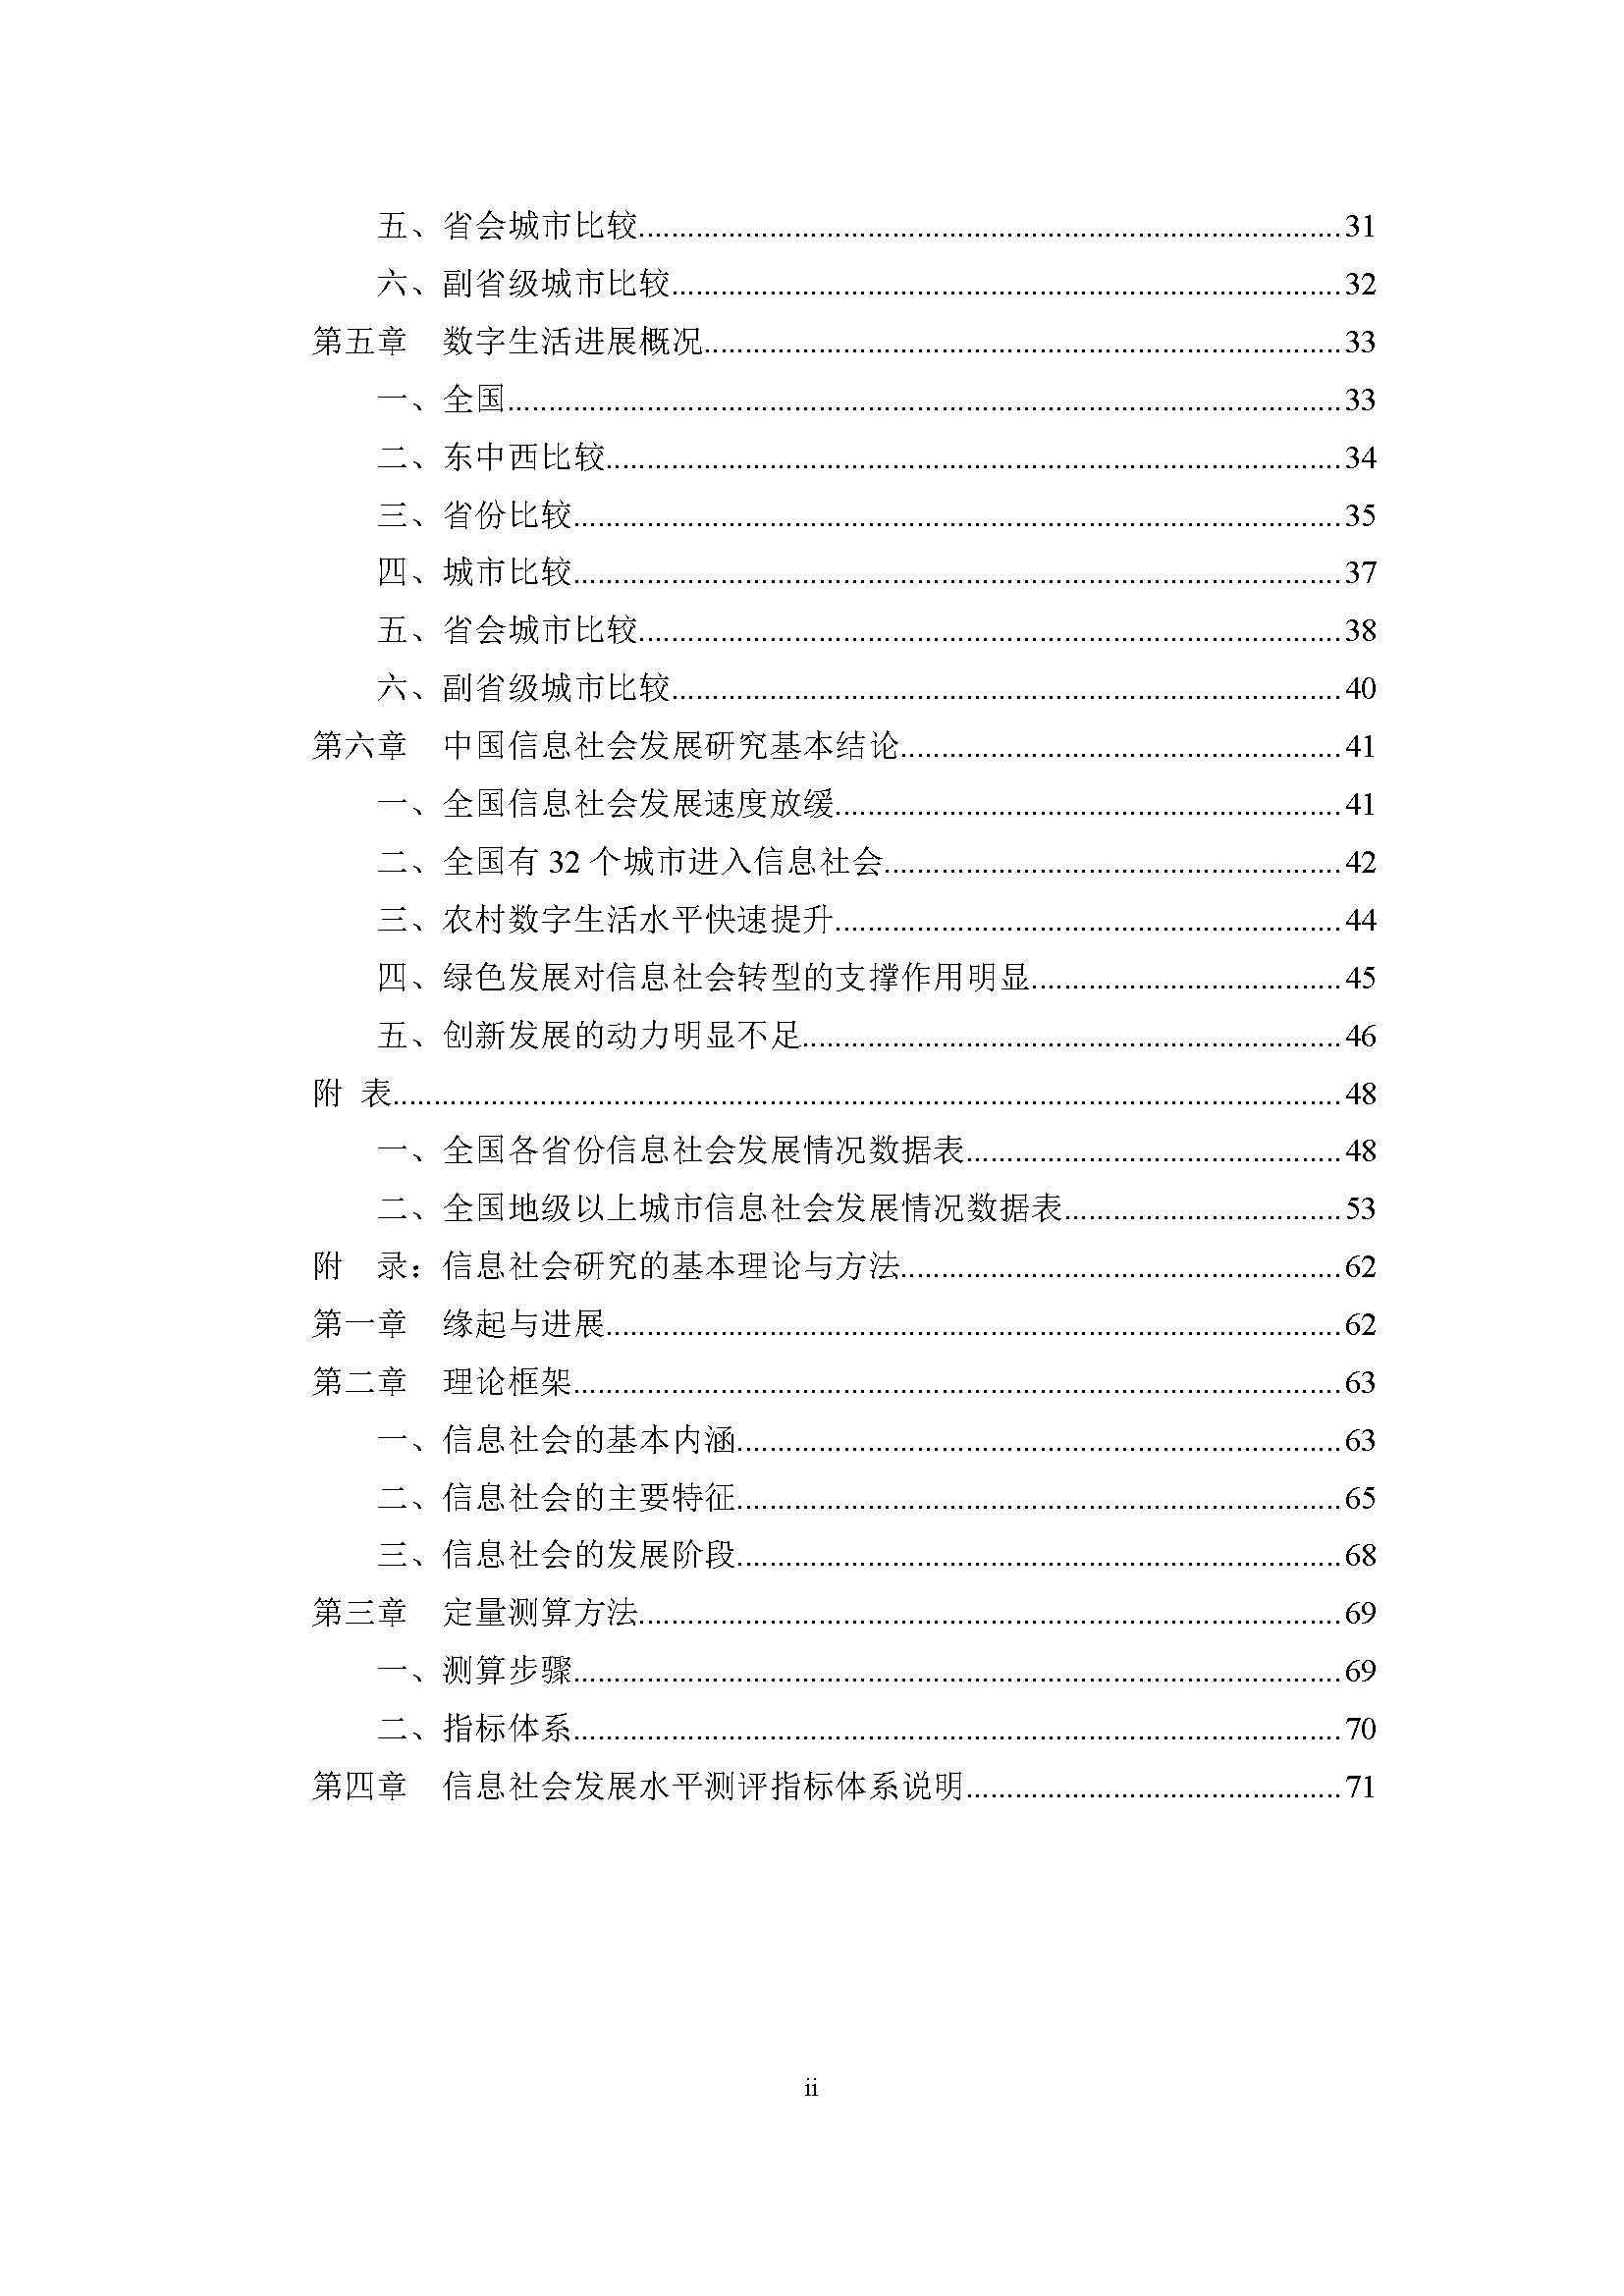 2016年中国信息社会发展报告_页面_02.jpg